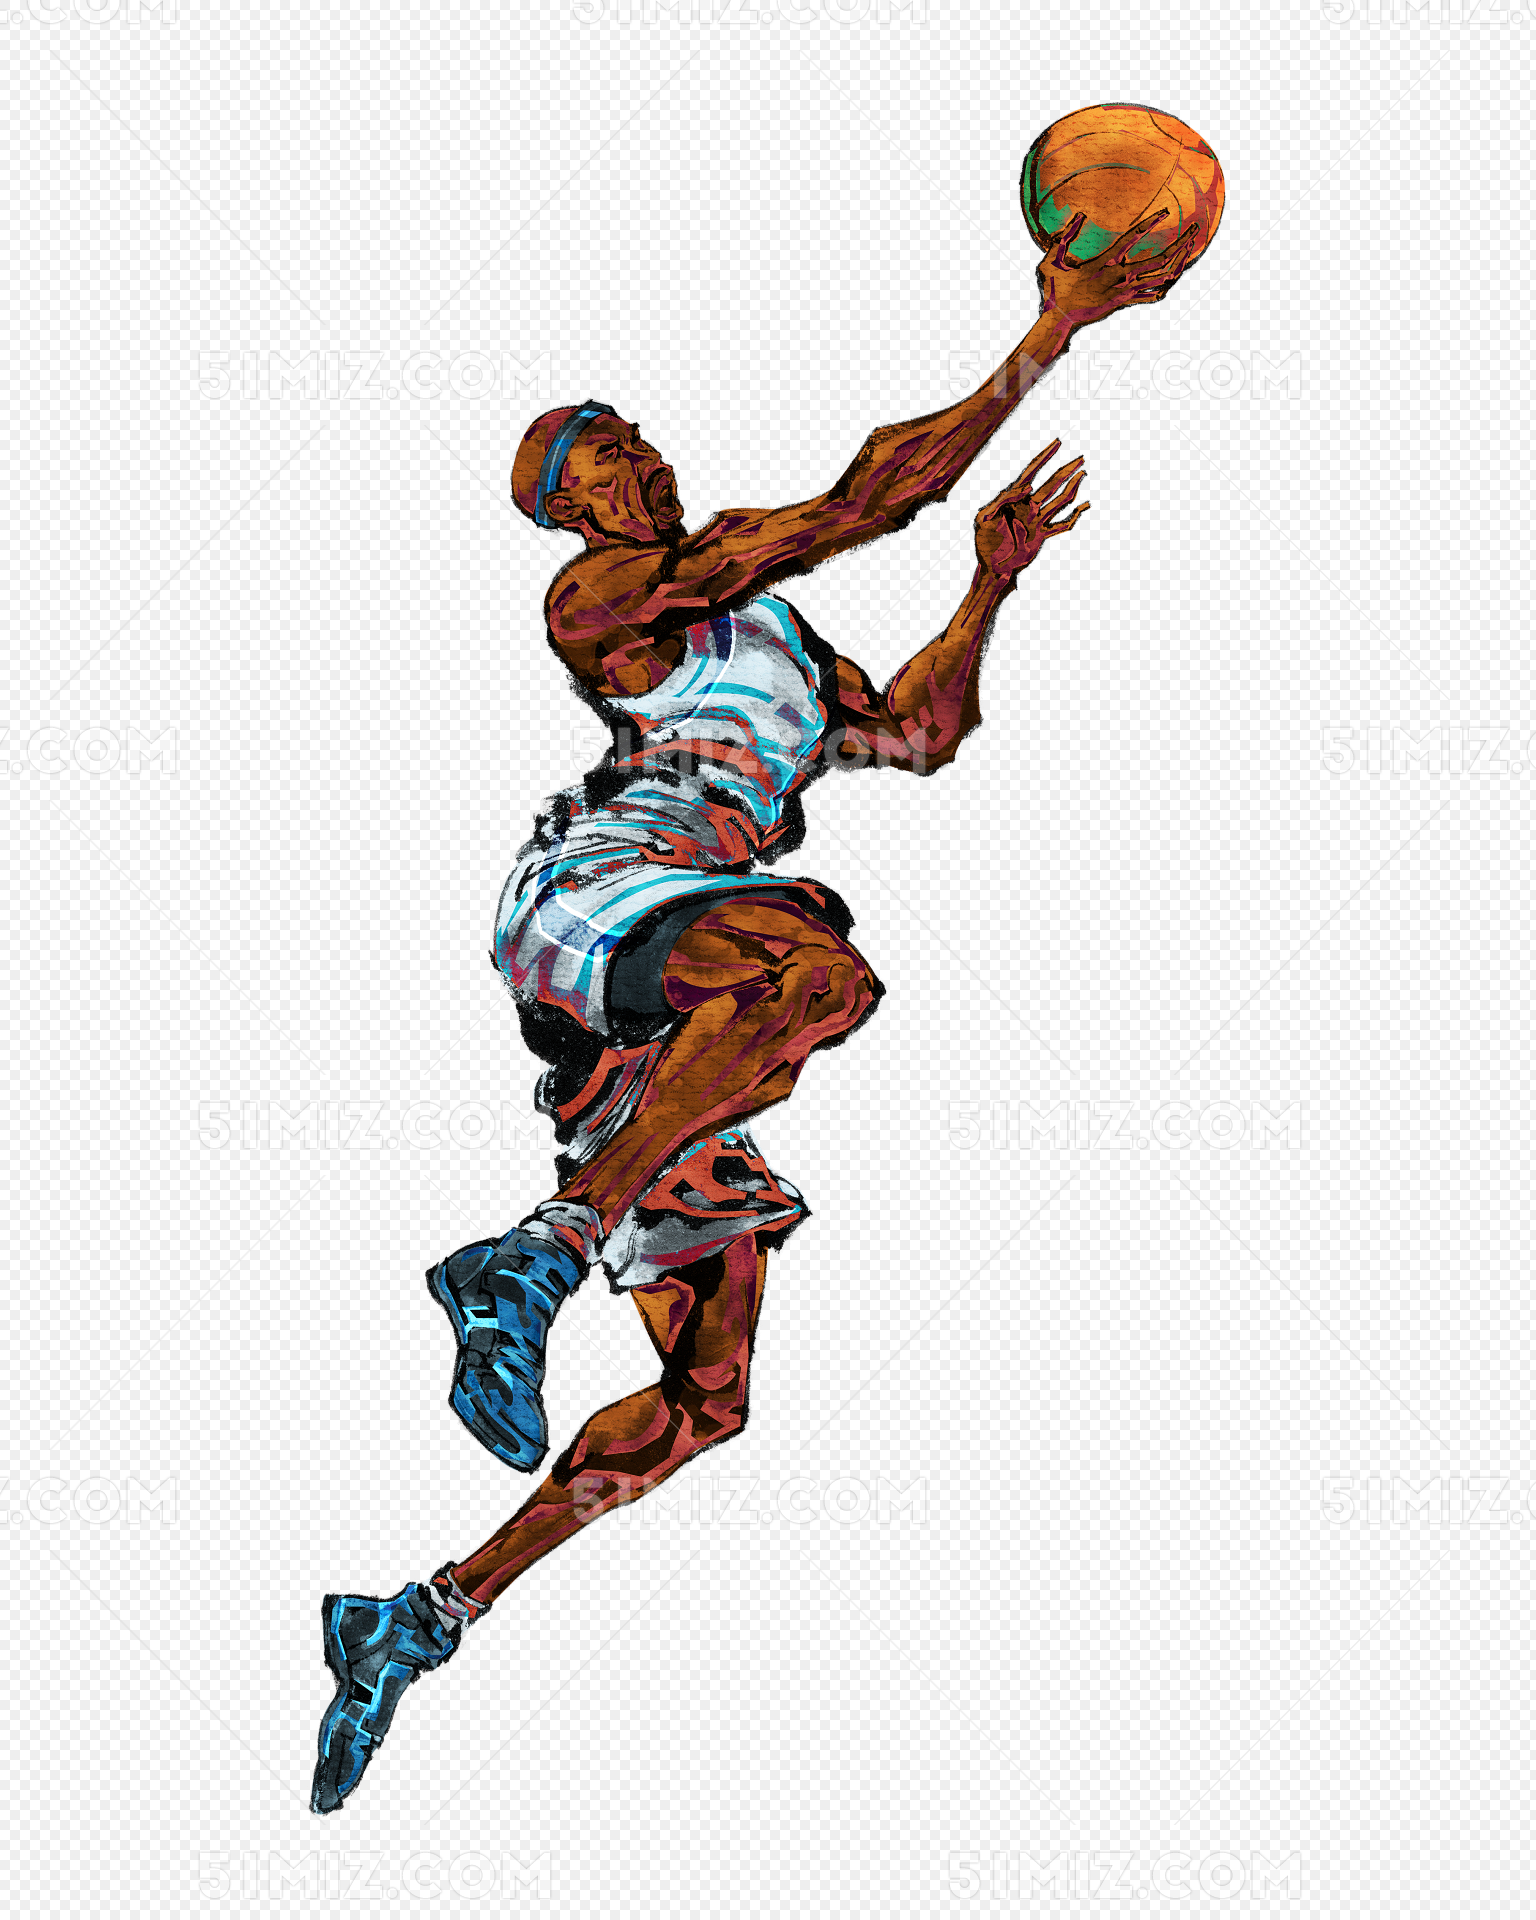 手绘篮球图片素材免费下载 - 觅知网